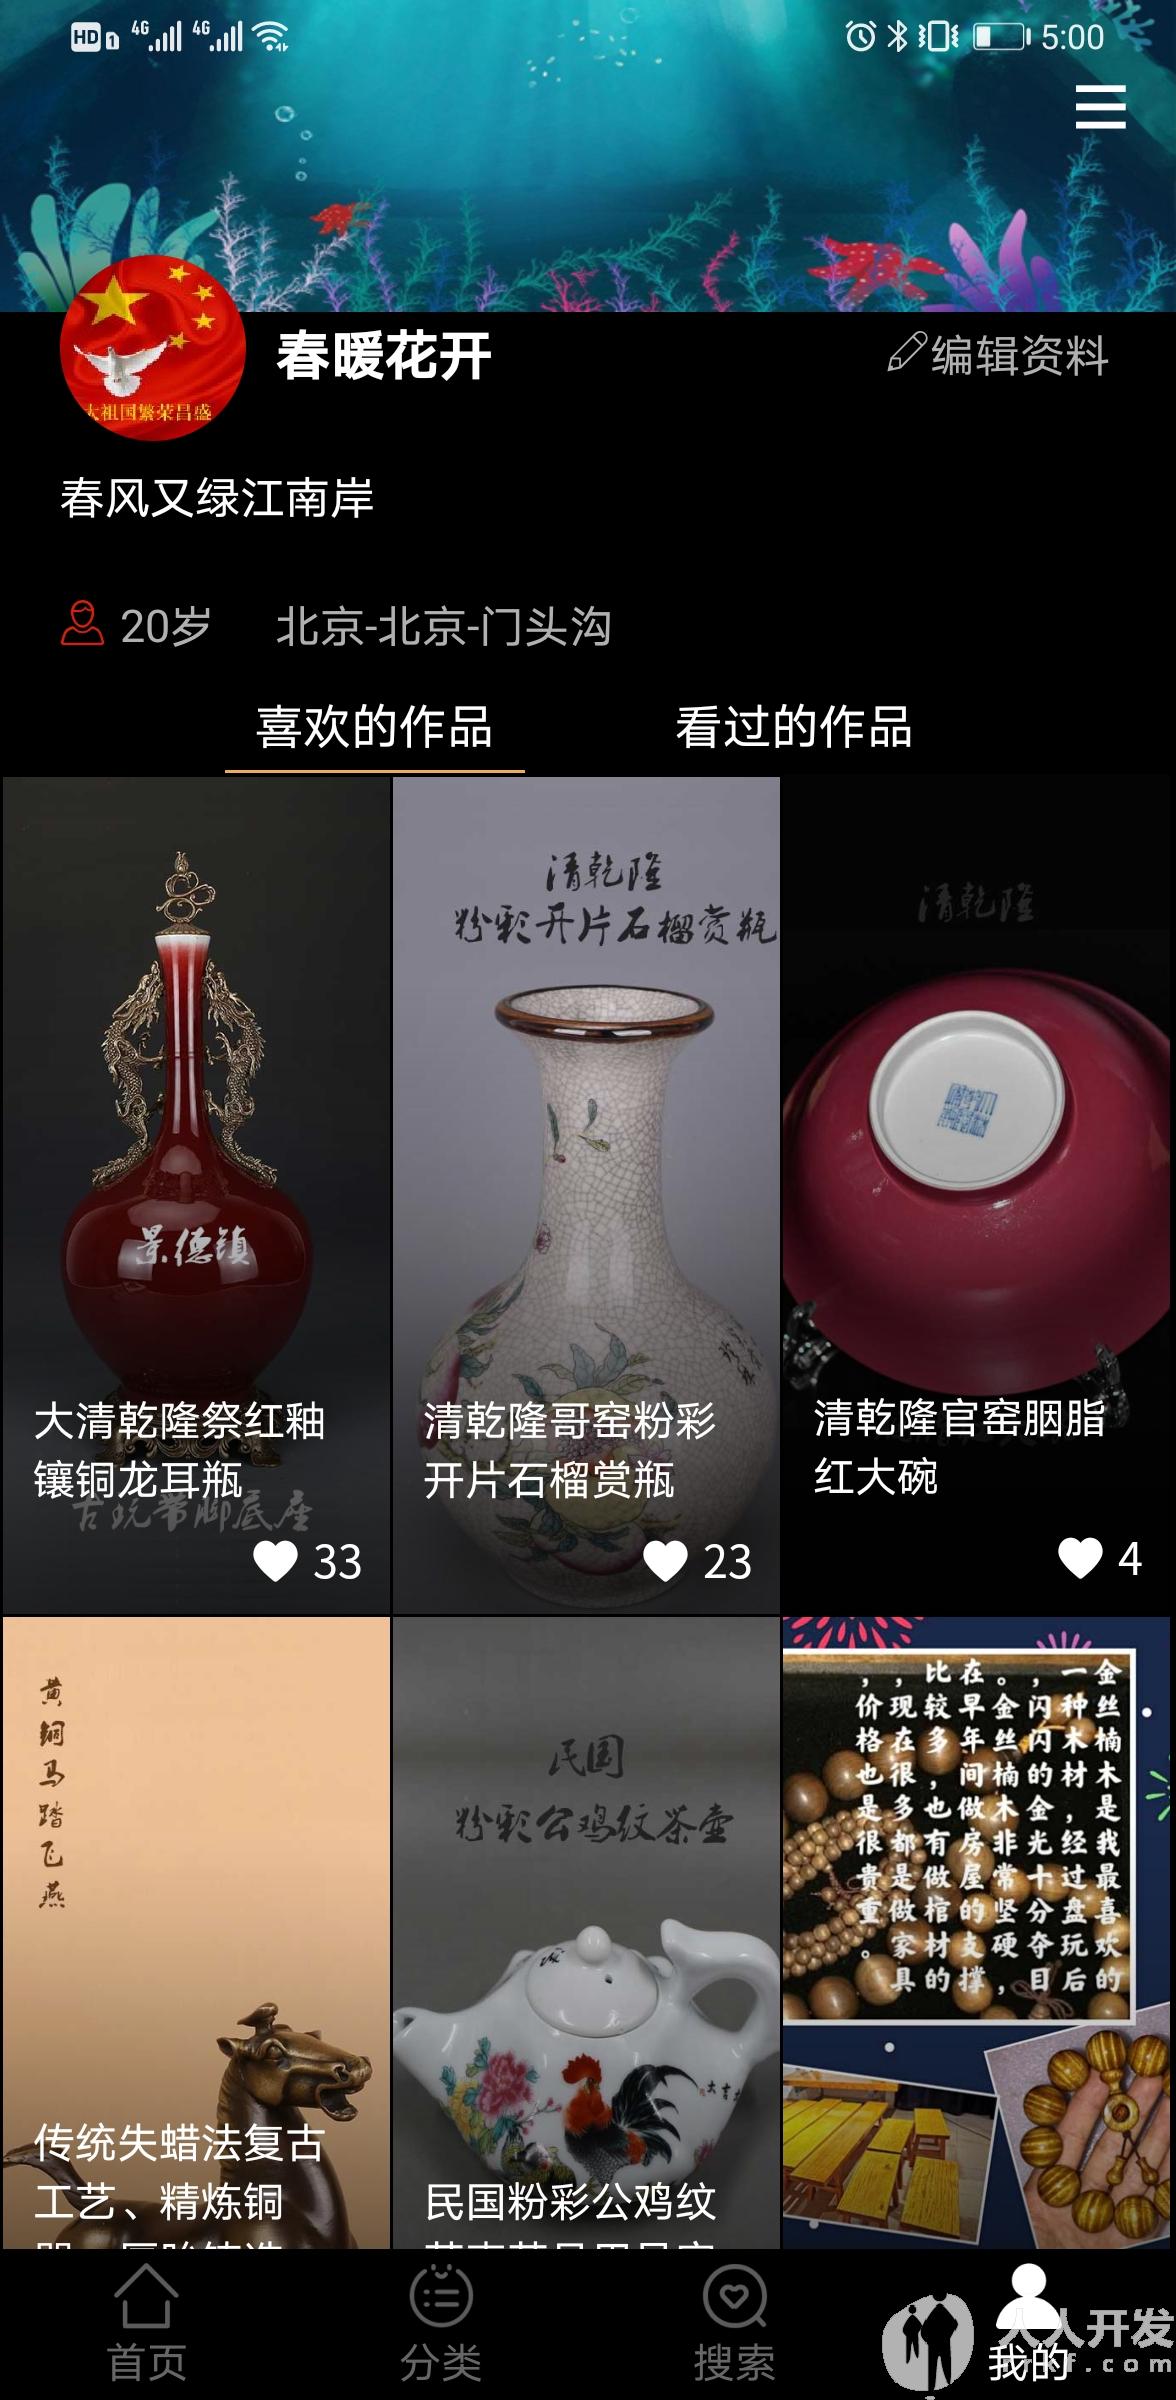 Screenshot 20210423 170009 com.yiyuanyoudao.app